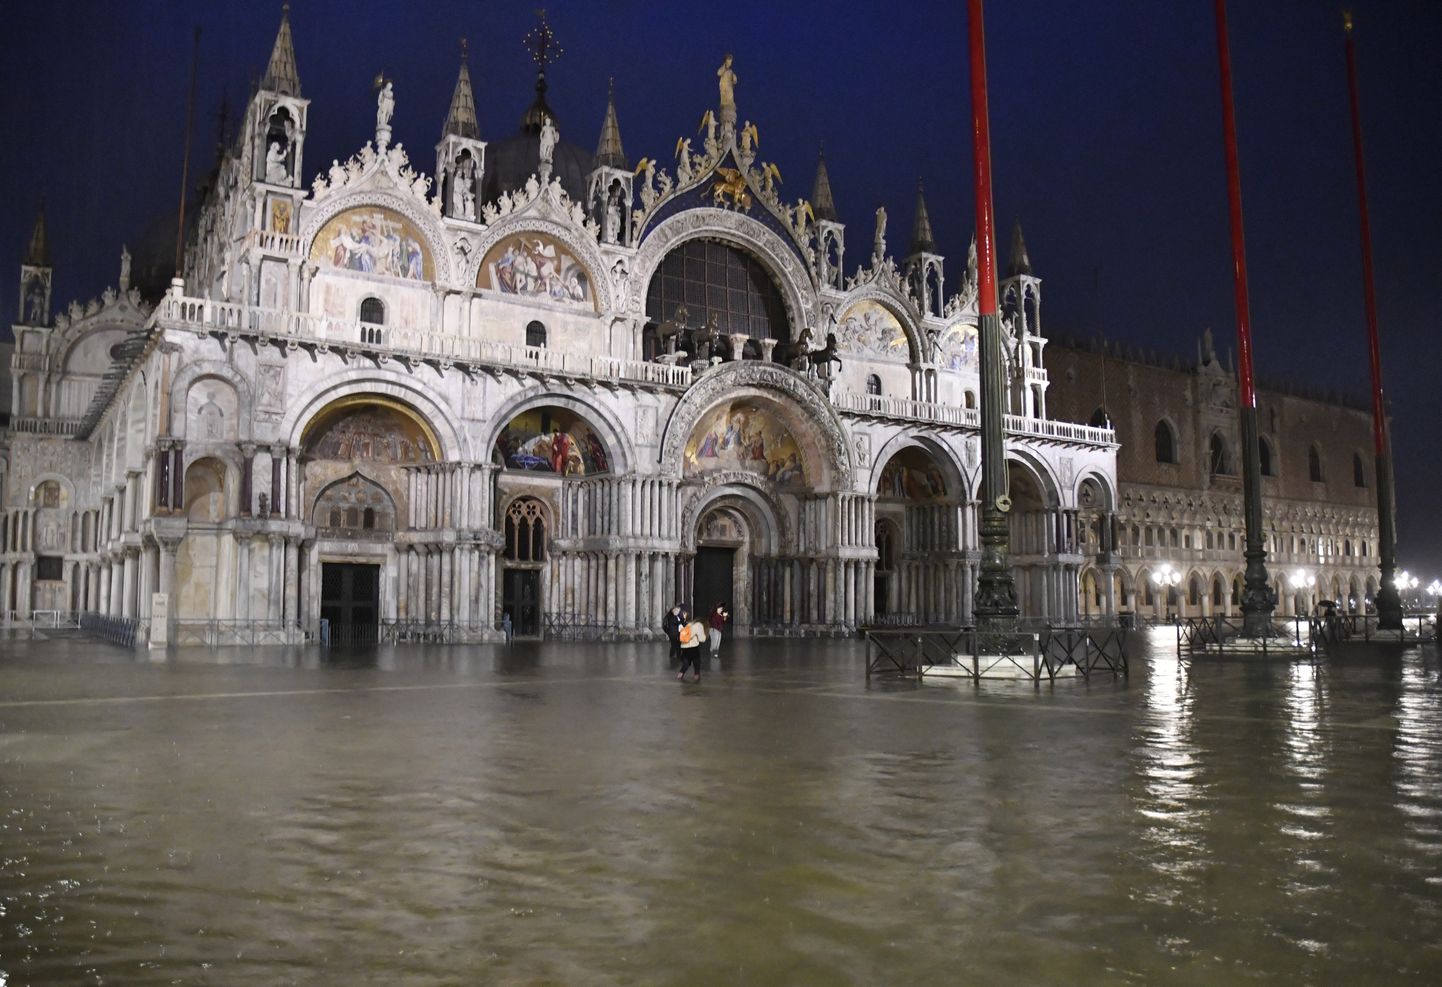 Покрытой водой оказалась визитка Венеции - площадь Святого Марка.